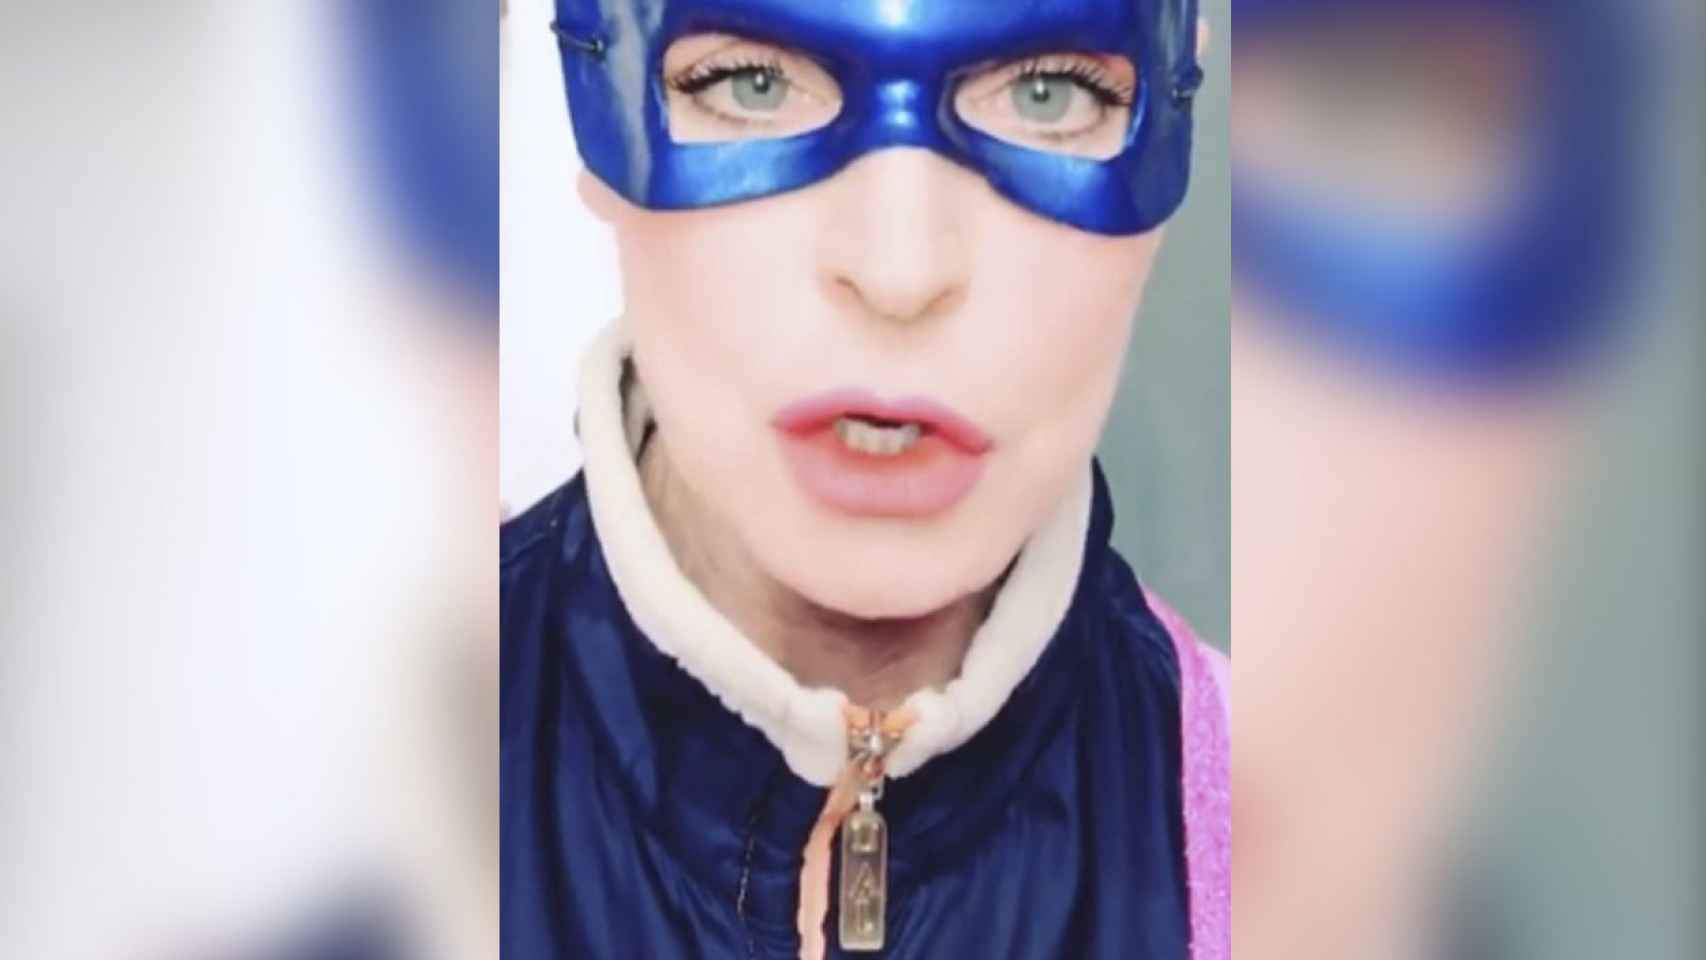 Antonia Dell'Atte en su perfil de Instagram haciendo de superheroína / BMAGAZINE